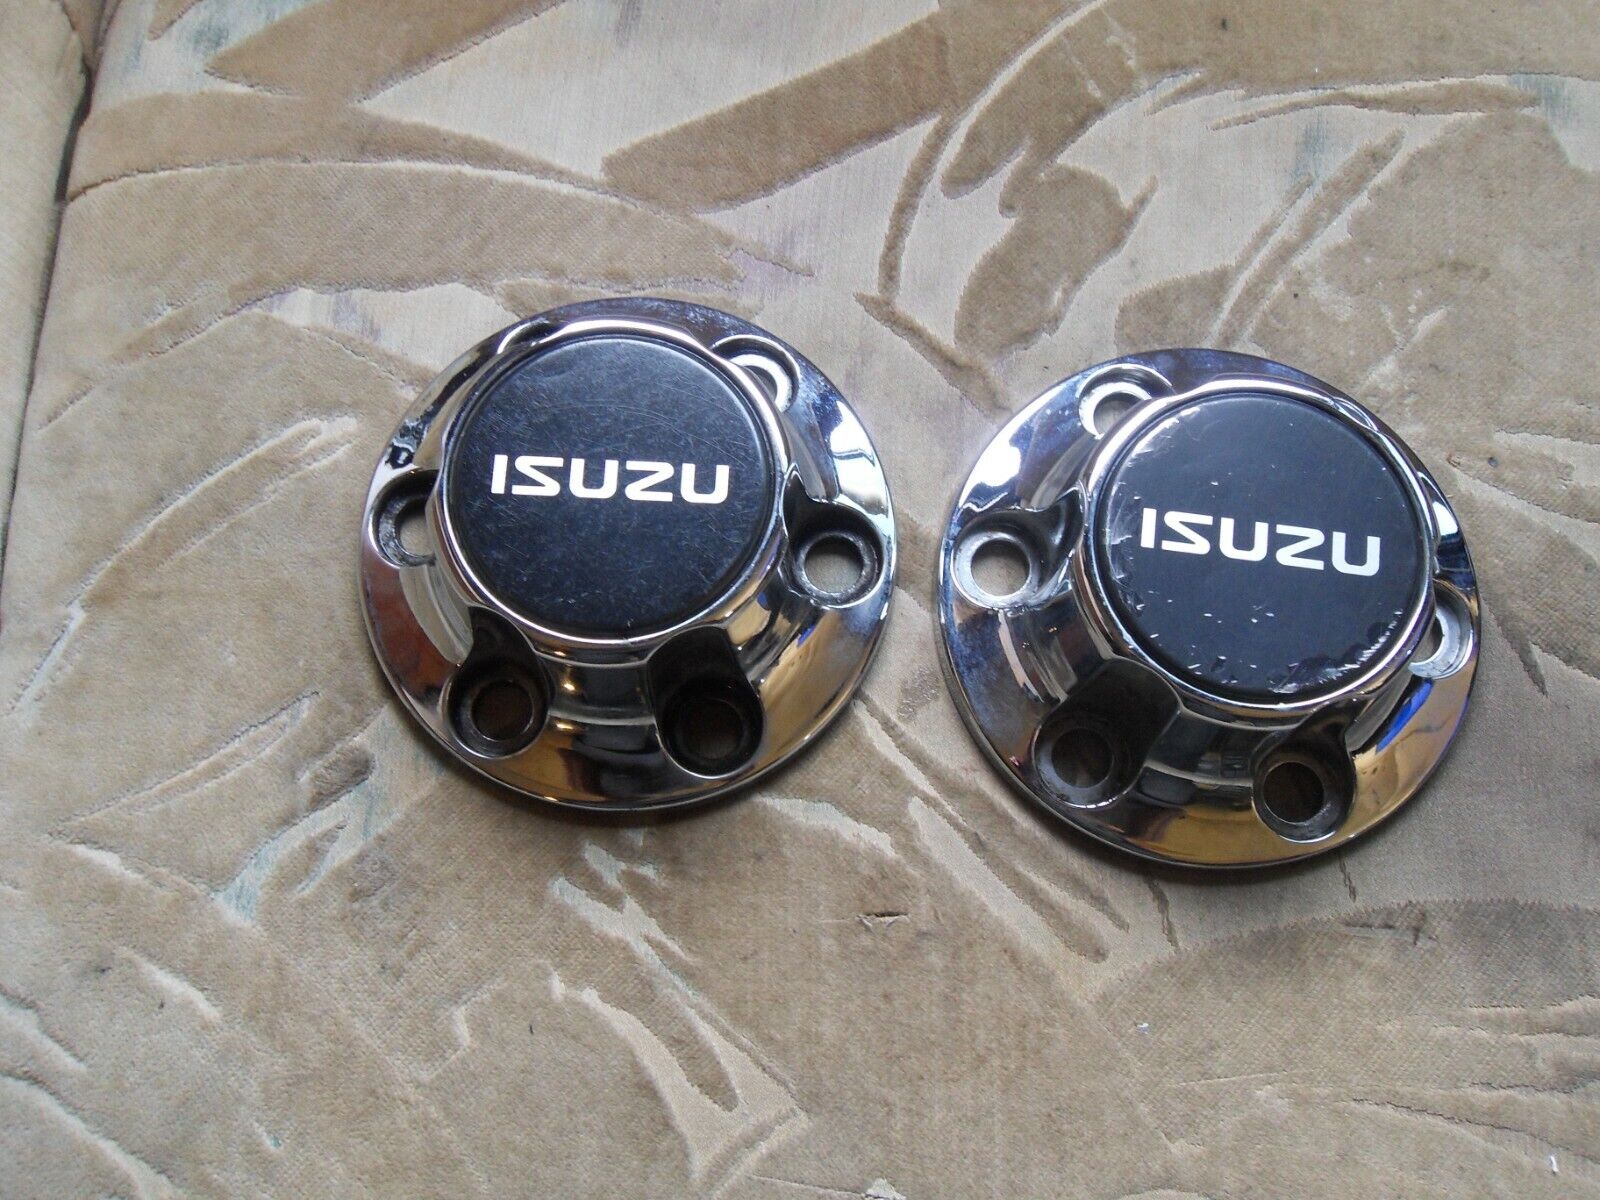 (2) ISUZU 897038-9770 chrome wheel center caps 96-99 Amigo Rodeo     03242201